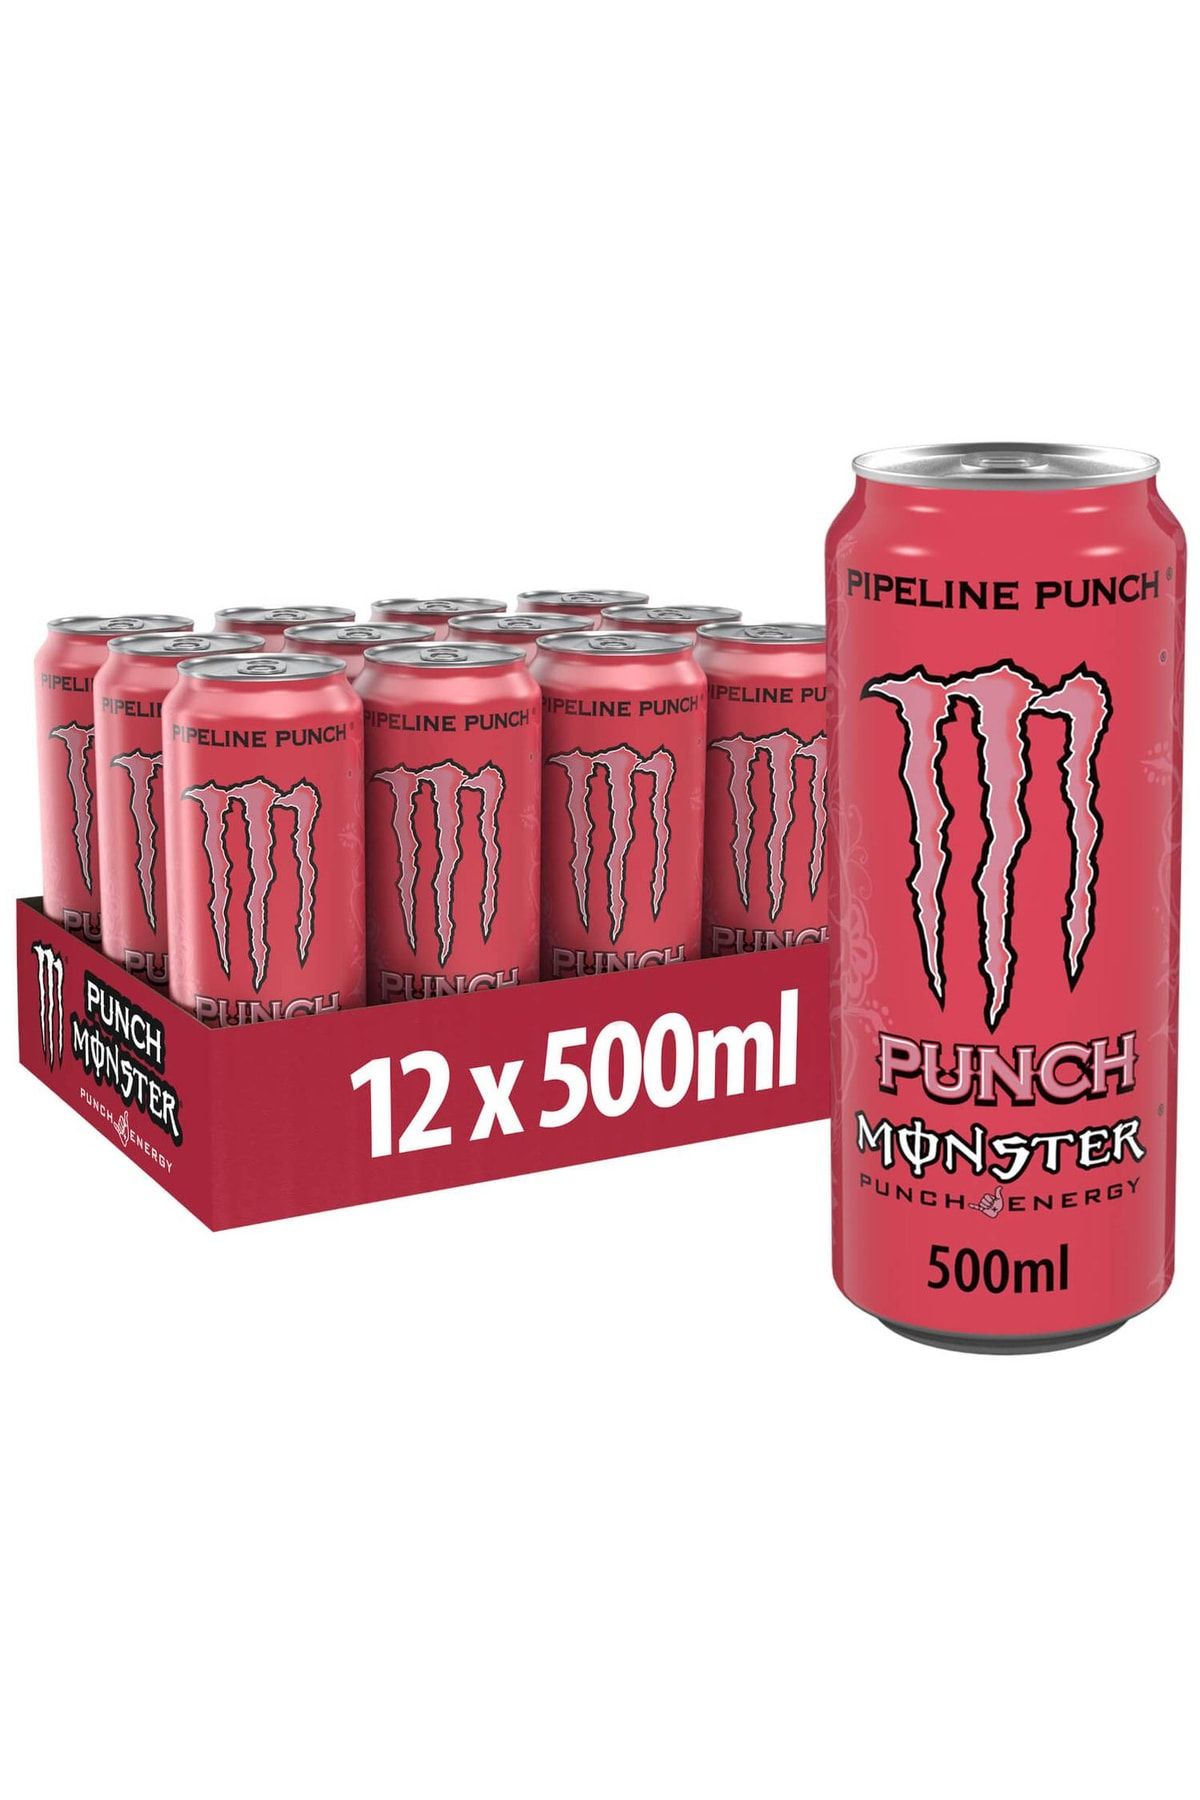 Monster Energy Monster 500 ml Enerji Içeceği Orjinal Tat Mükemmel Lezzet 12 Adet